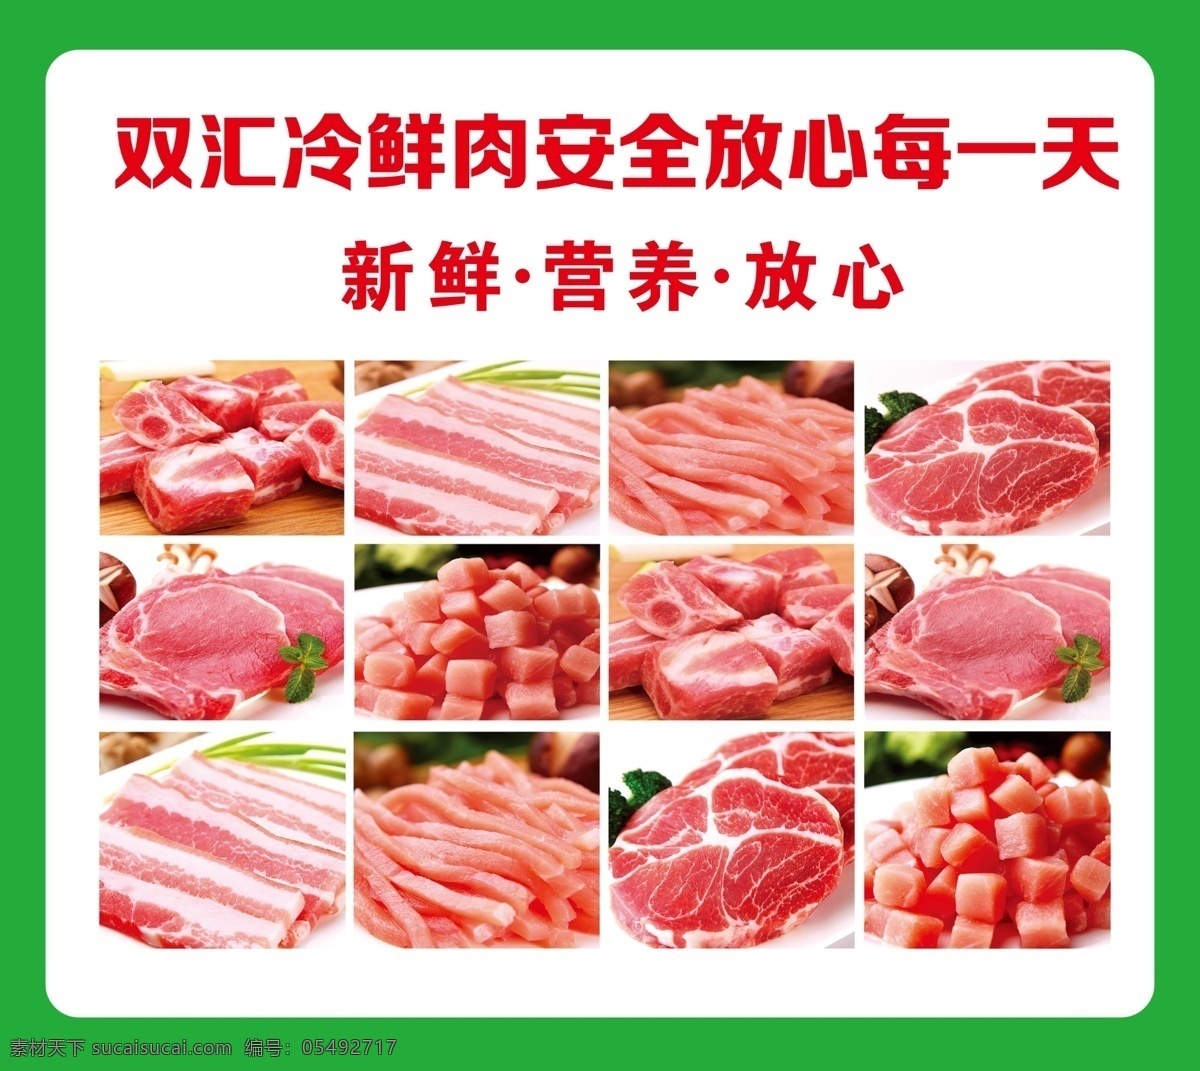 双汇 冷 鲜肉 肉品 展板 肉 片肉 新鲜 营养 放心 双汇冷鲜肉 展板模板